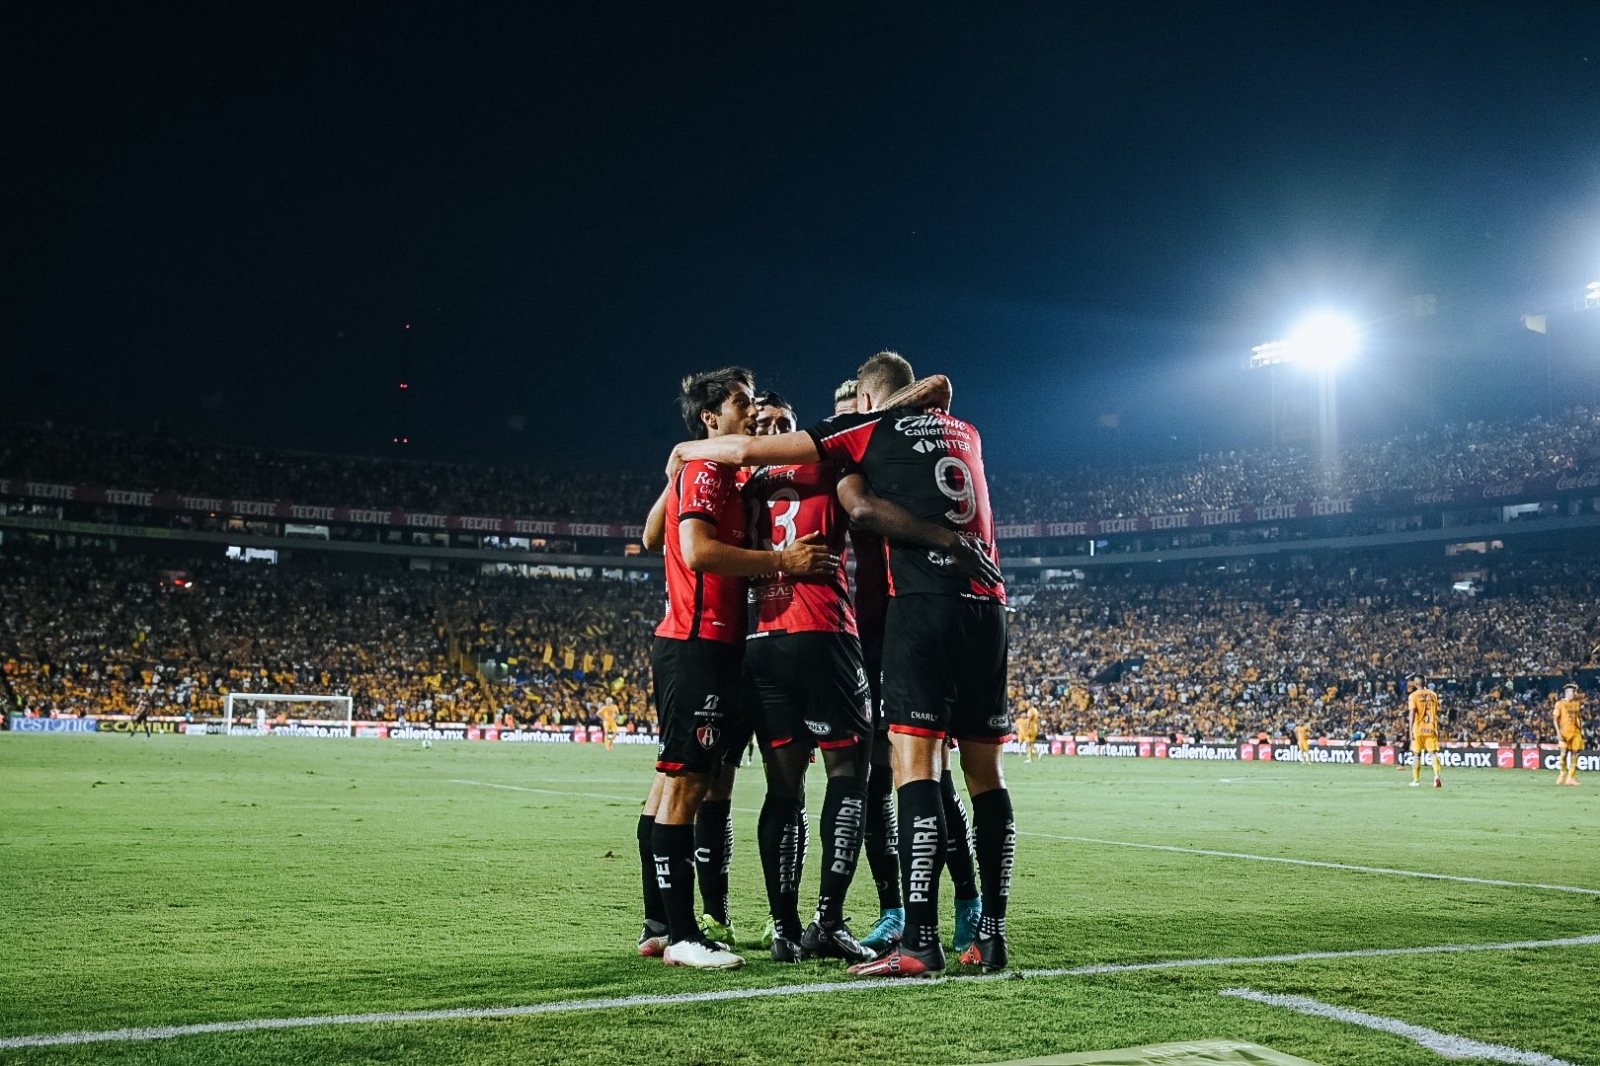 León vs Atlas: Sigue en vivo el partido de la Jornada 11 del Apertura 2022 de la Liga MX